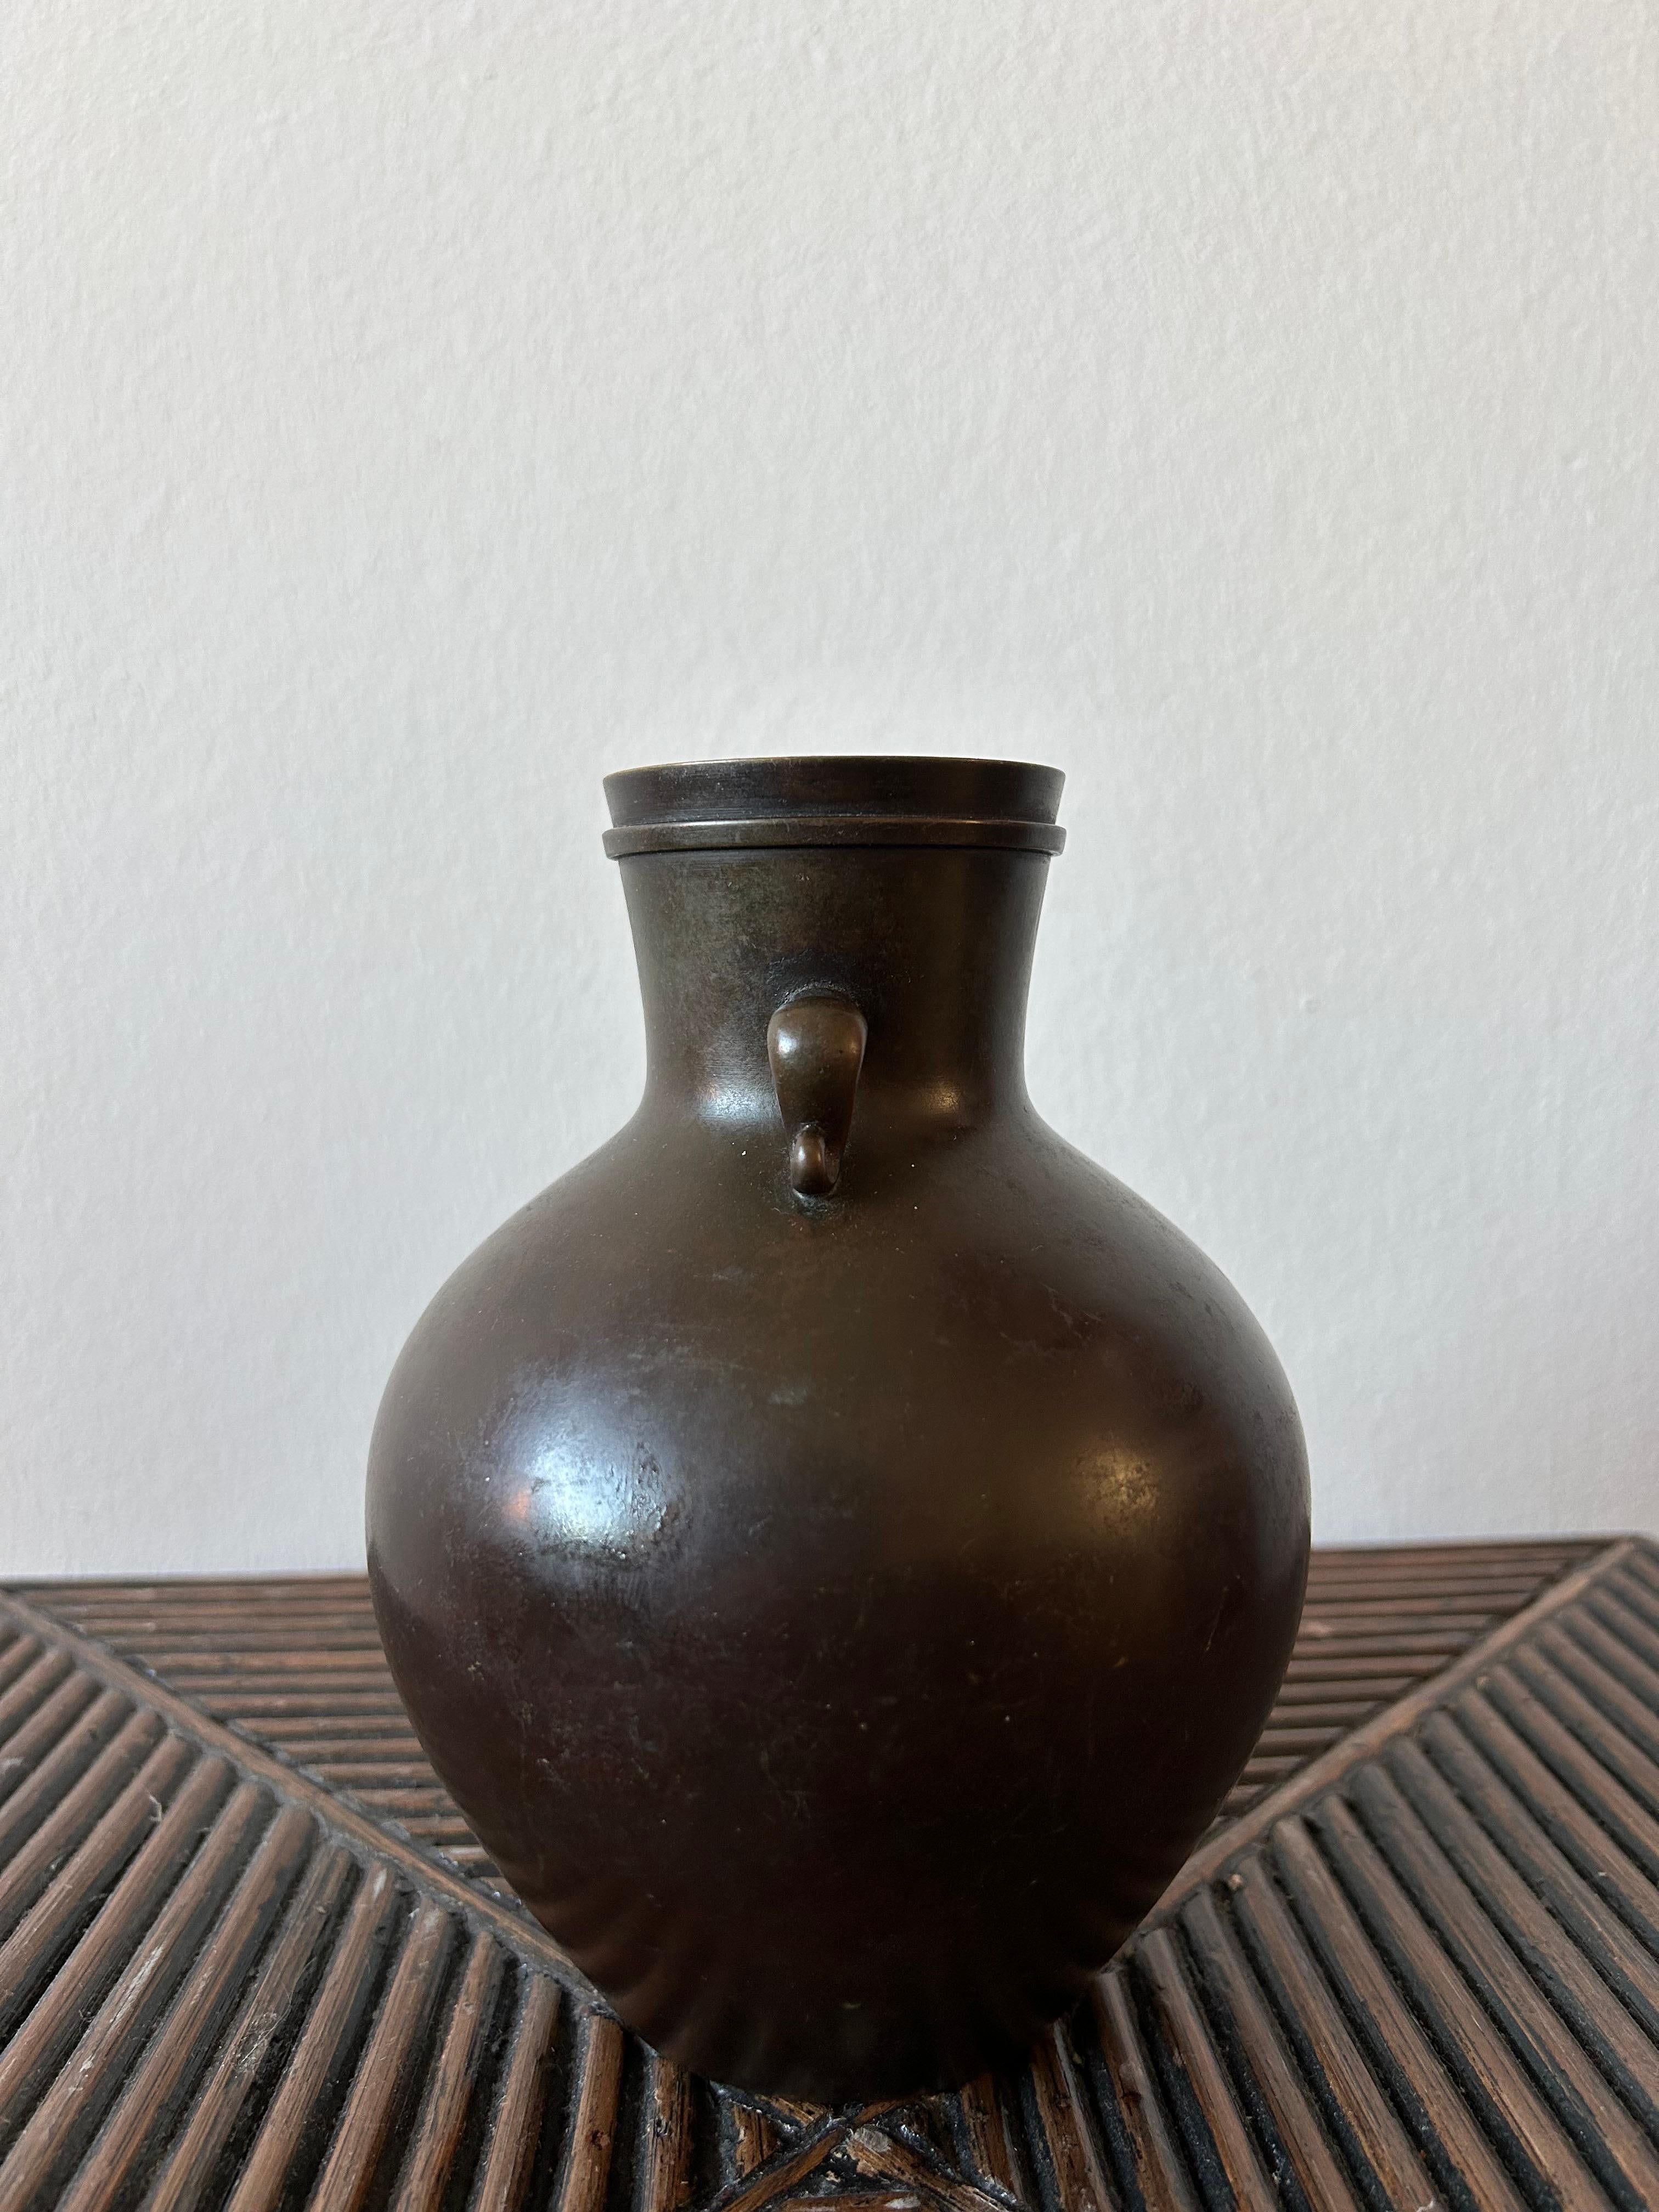 Rare et important vase en bronze Just Andersen modèle B2368.
Le vase est en bon état avec une belle patine qui s'est encore améliorée au fil des ans.

Ce vase est une pièce parfaite pour tout type d'intérieur et s'adaptera aussi bien au style